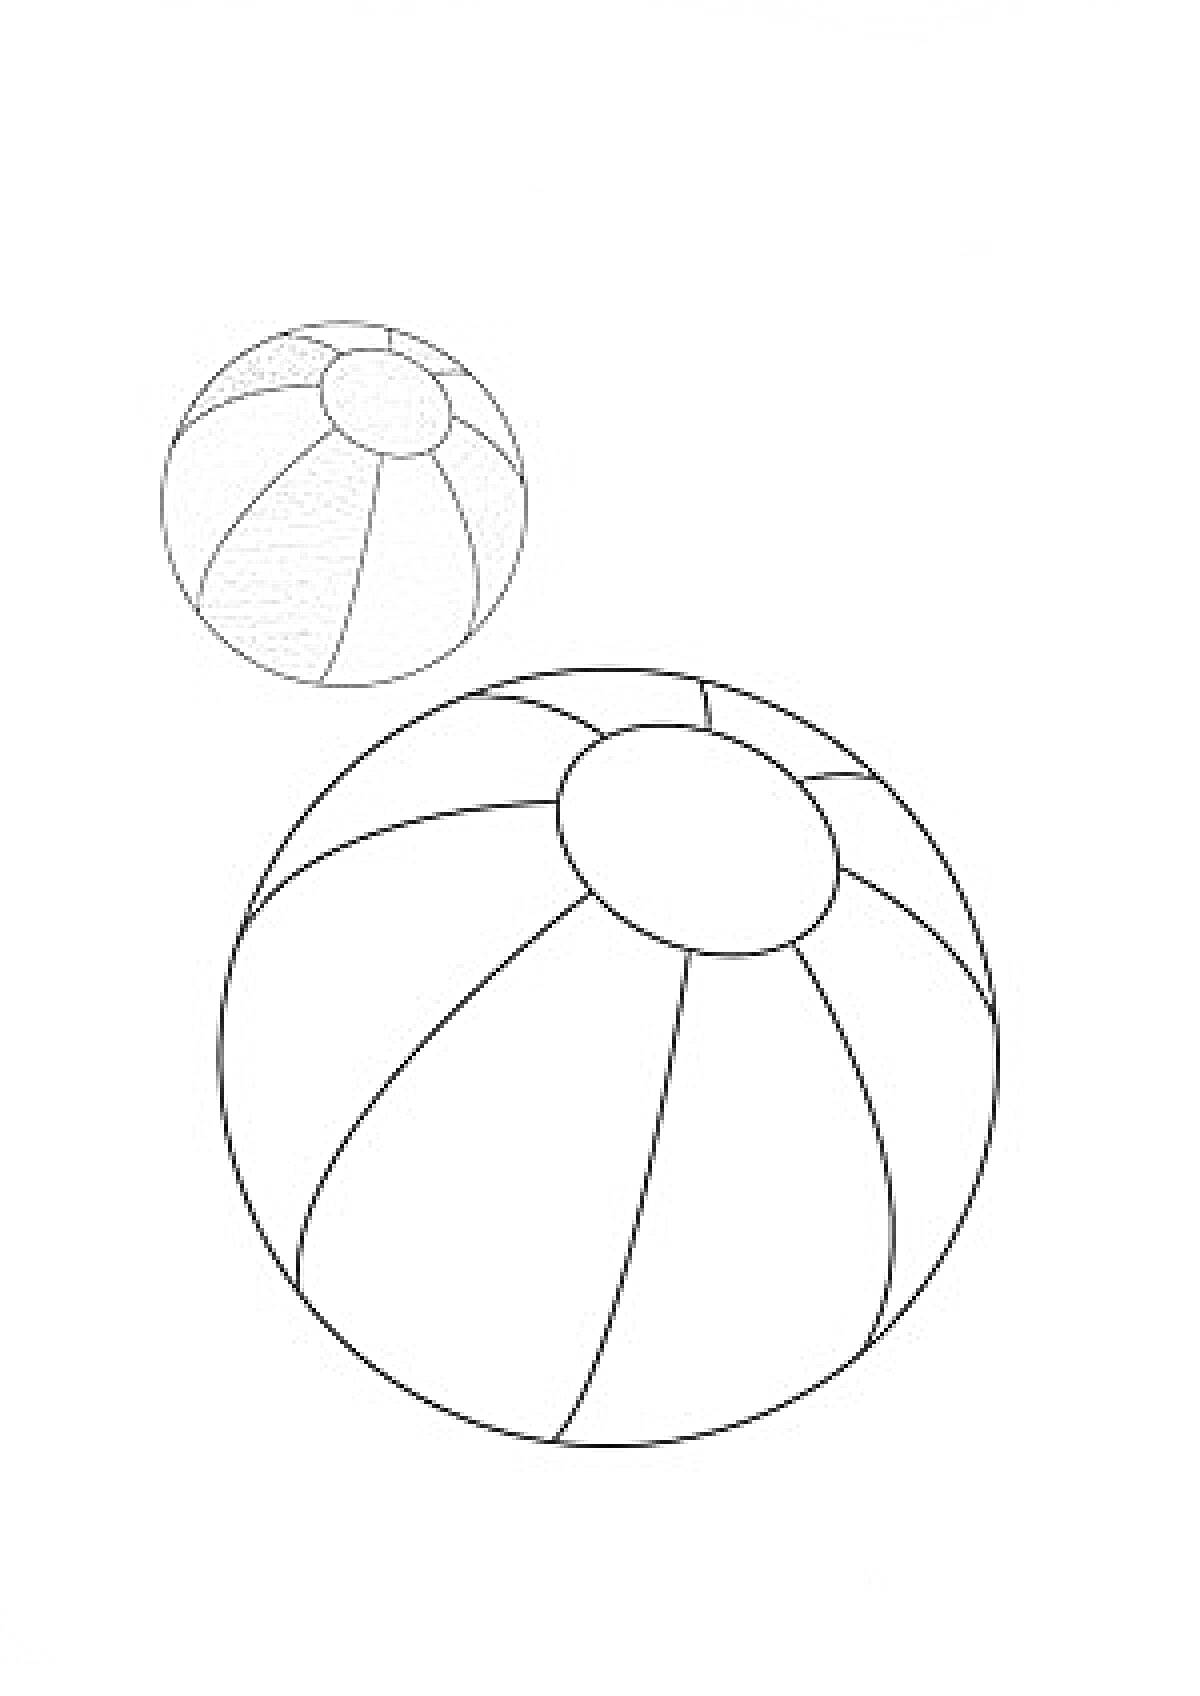 Пляжный мяч с цветным образцом